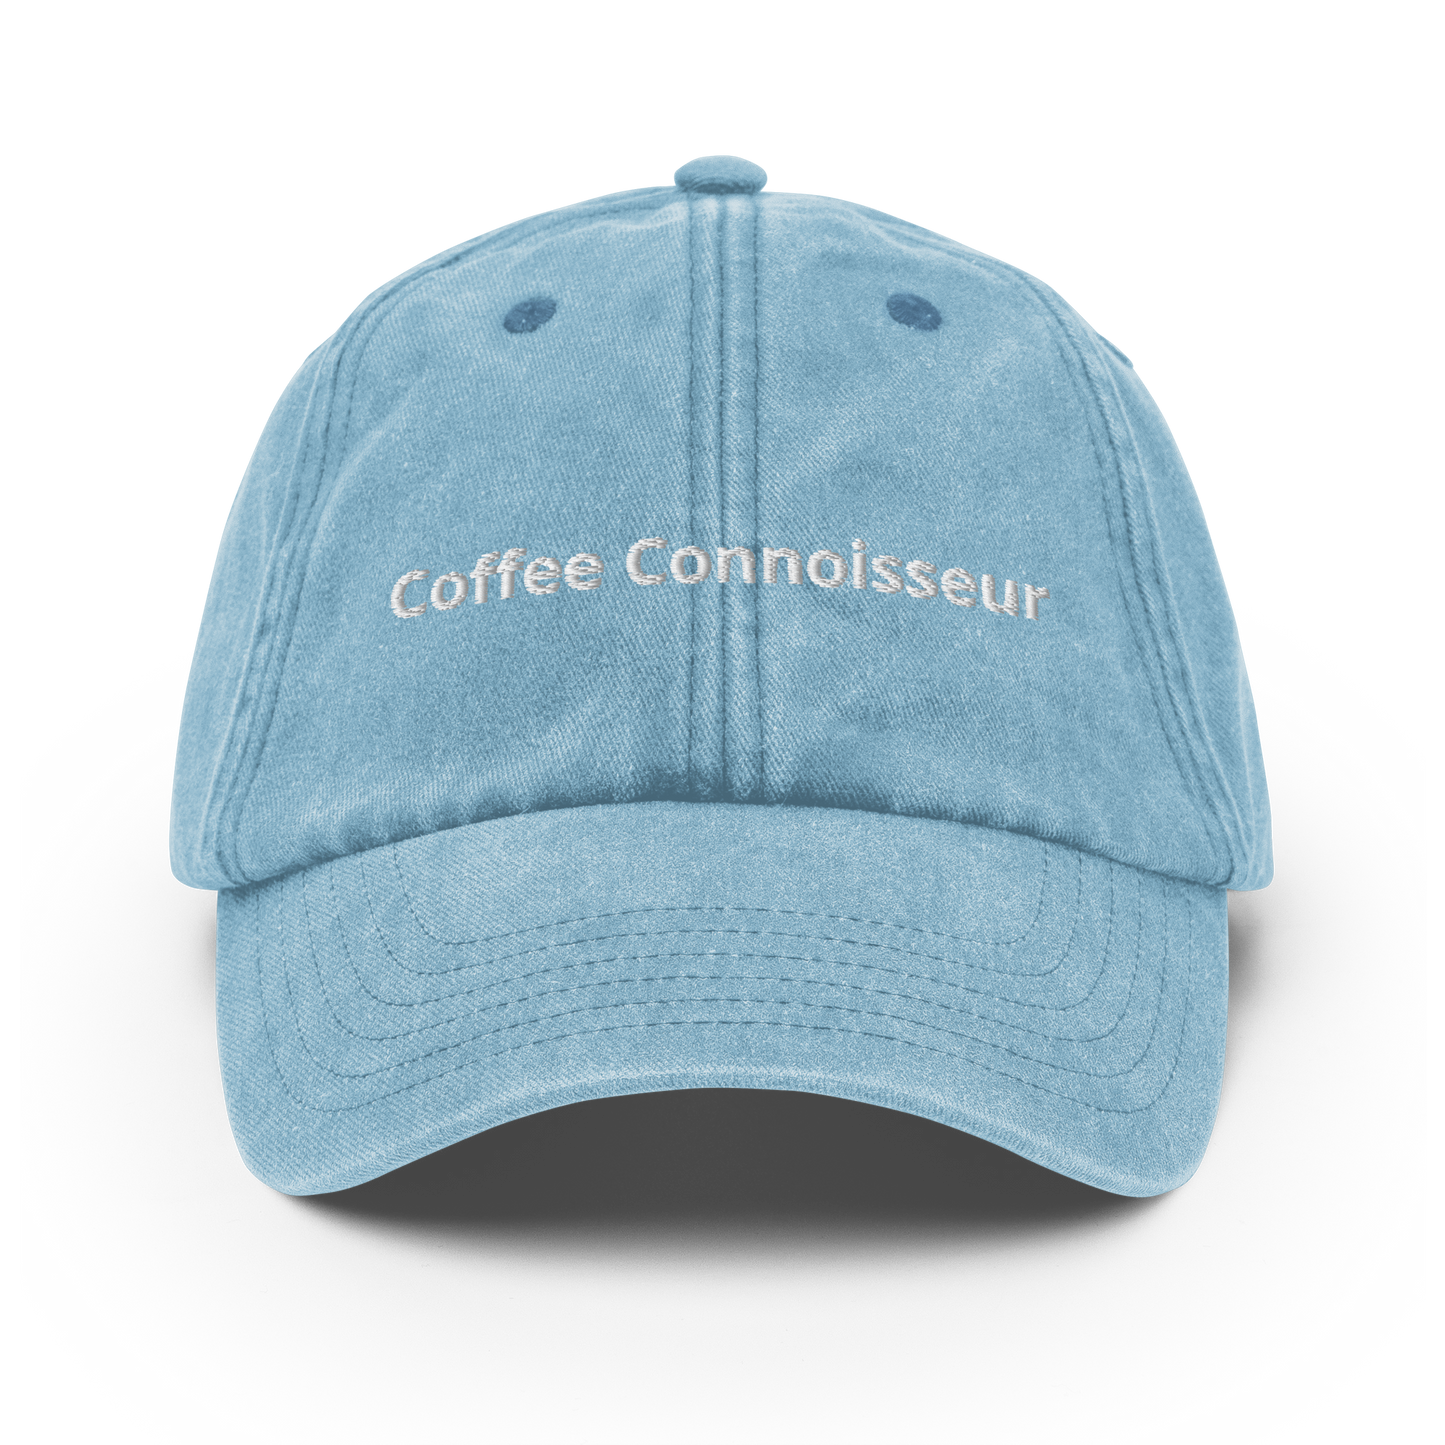 Coffee Connoisseur - Vintage Hat